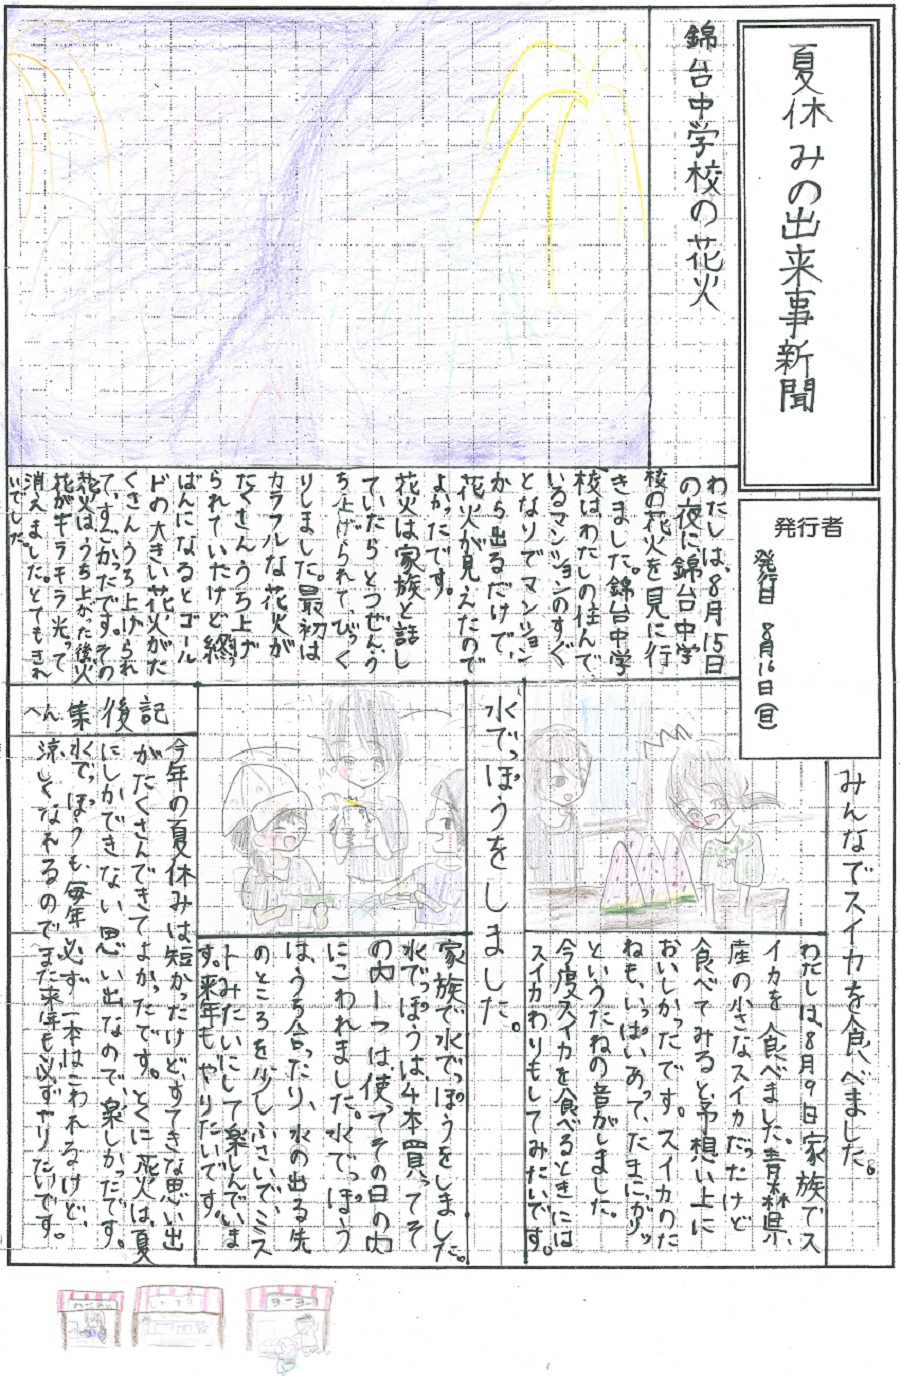 10 여름방학의 사건 신문